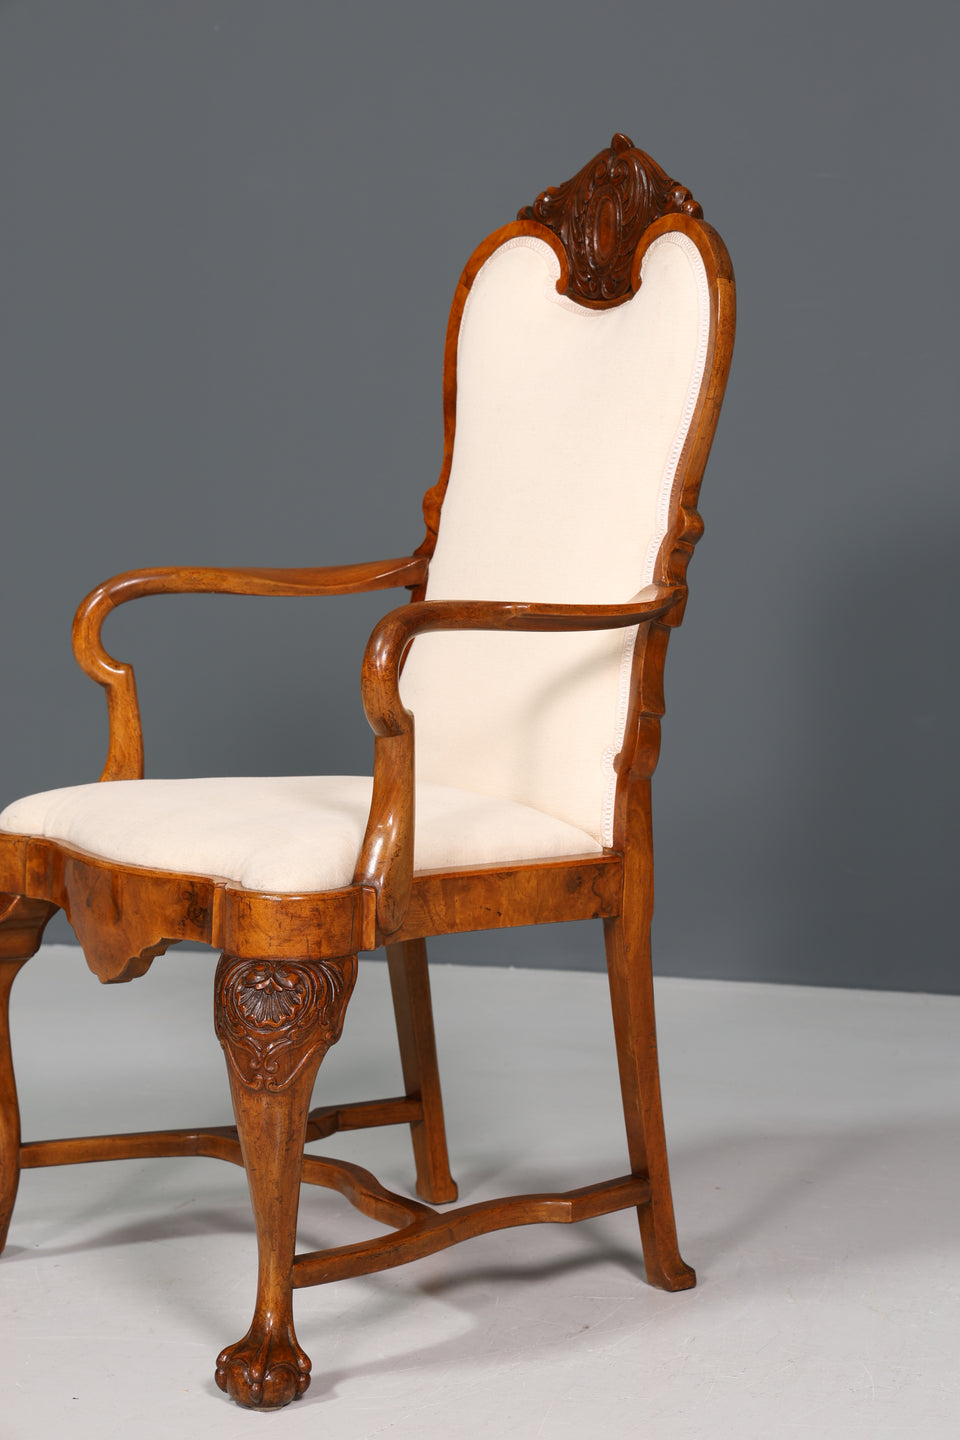 Traumhafter Louis Philippe Armlehnstuhl Antik massiv Holz Sekretär Stuhl Sessel